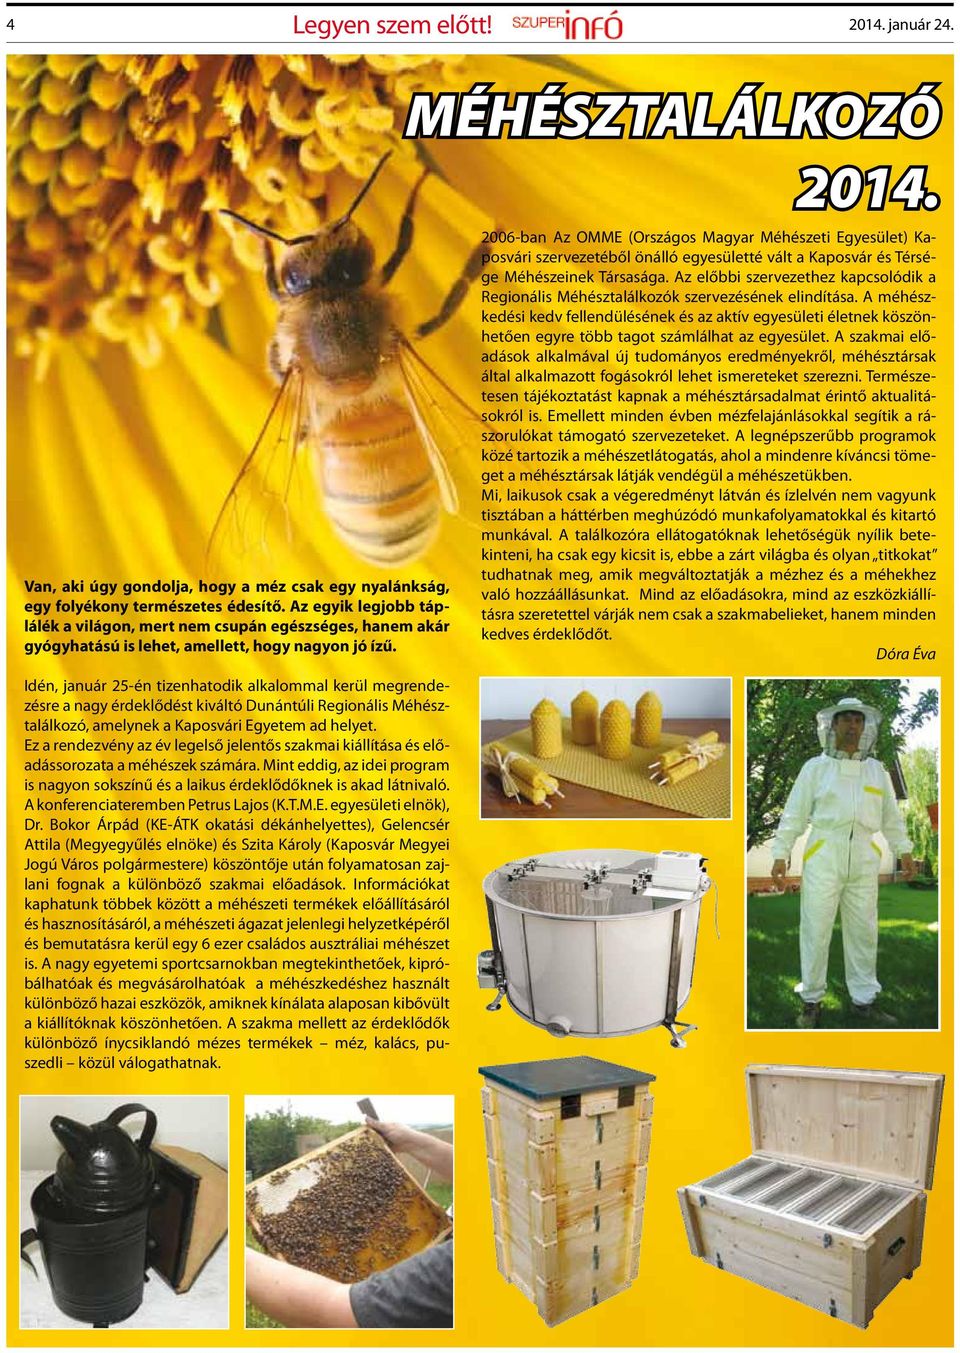 Idén, január 25-én tizenhatodik alkalommal kerül megrendezésre a nagy érdeklődést kiváltó Dunántúli Regionális Méhésztalálkozó, amelynek a Kaposvári Egyetem ad helyet.